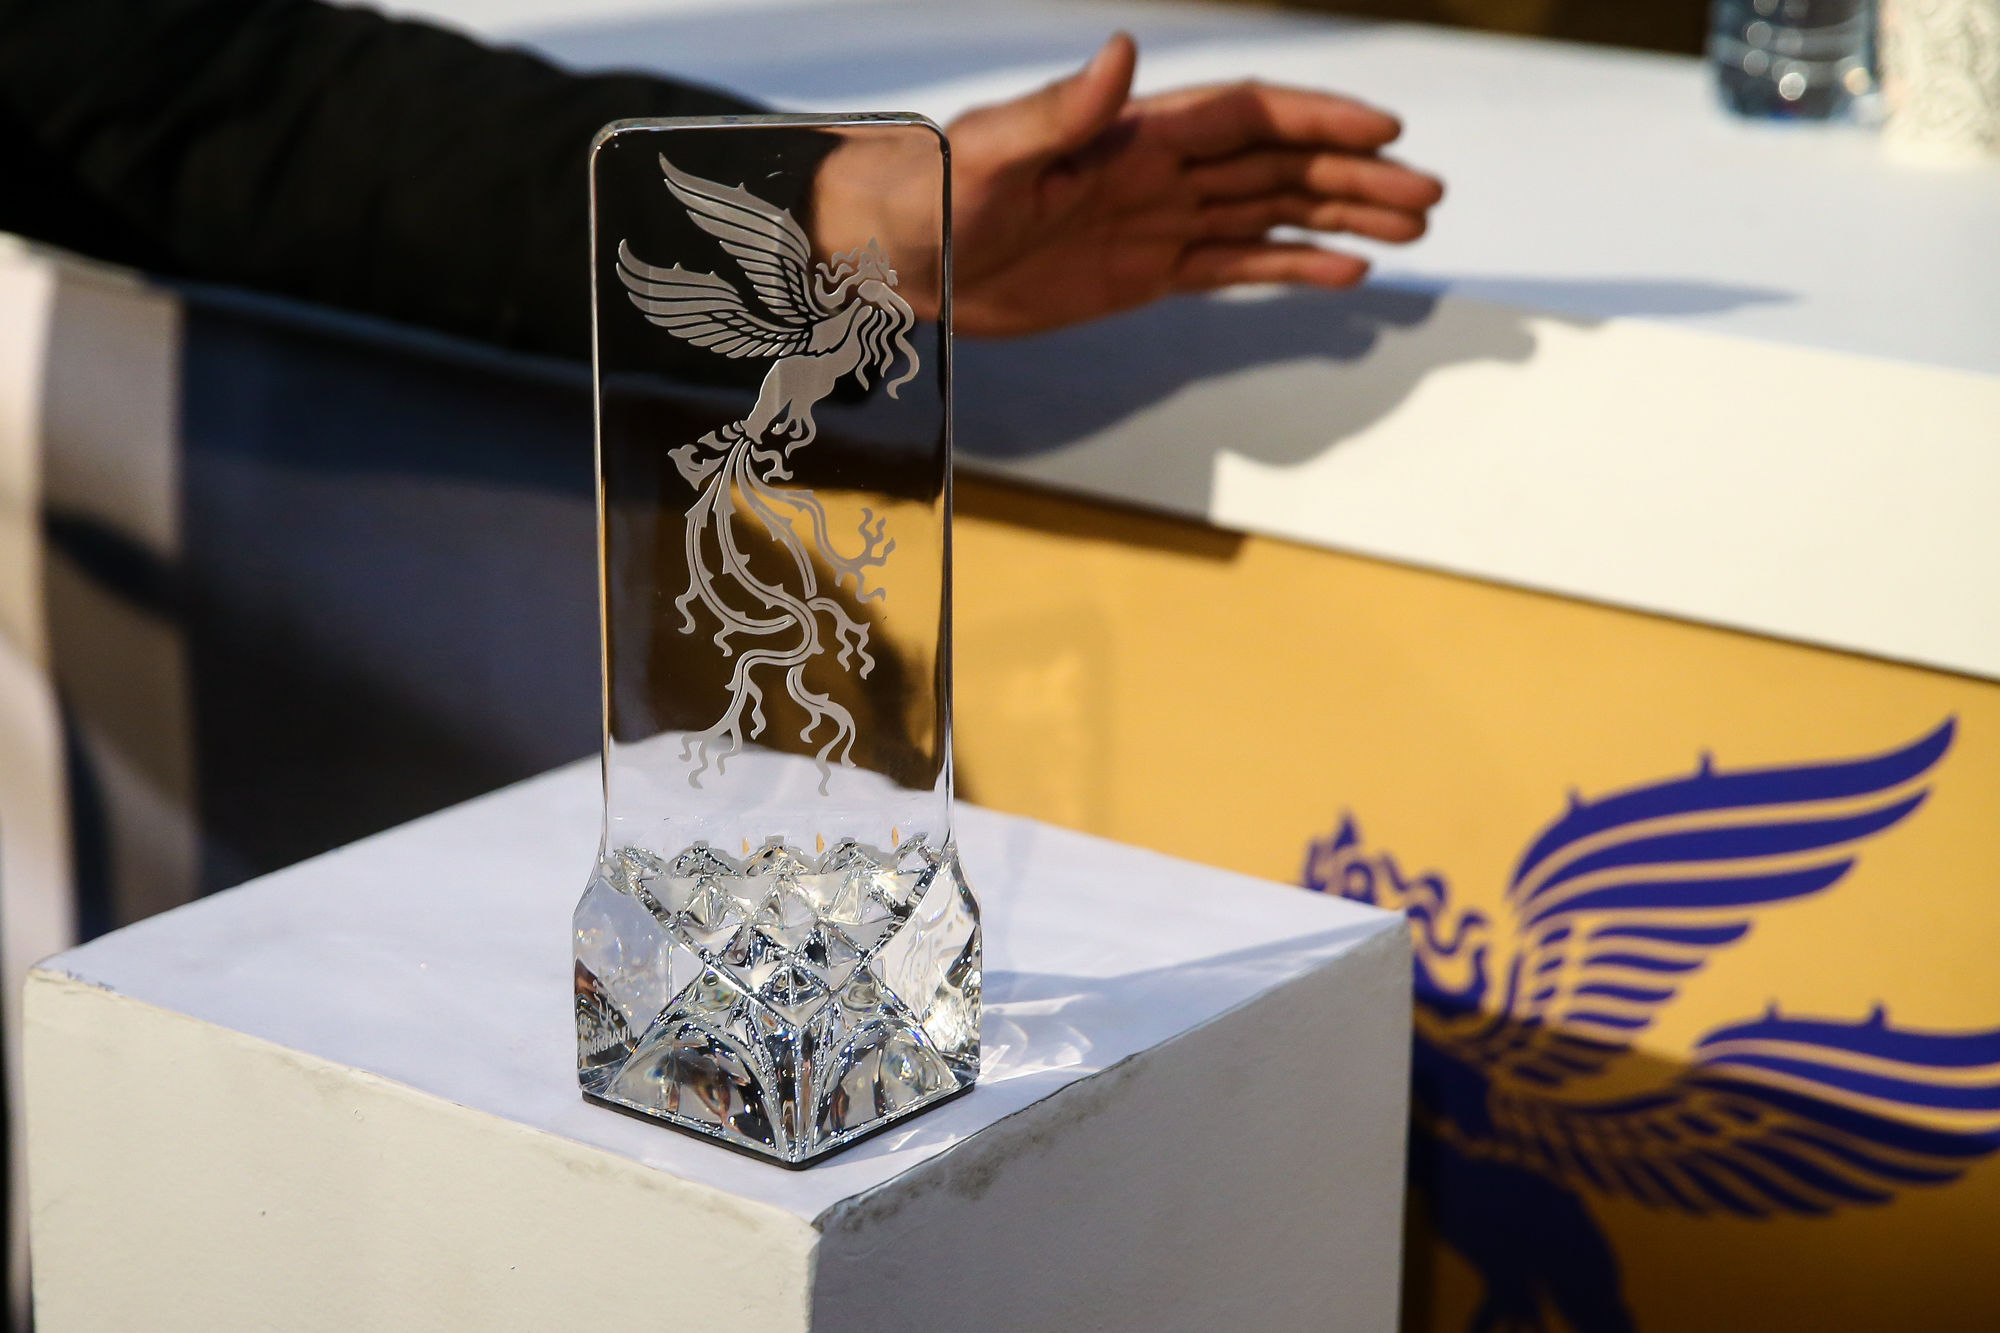 برگزیدگان جشنواره فیلم فجر معرفی شدند/ جواد عزتی جایزه گرفت